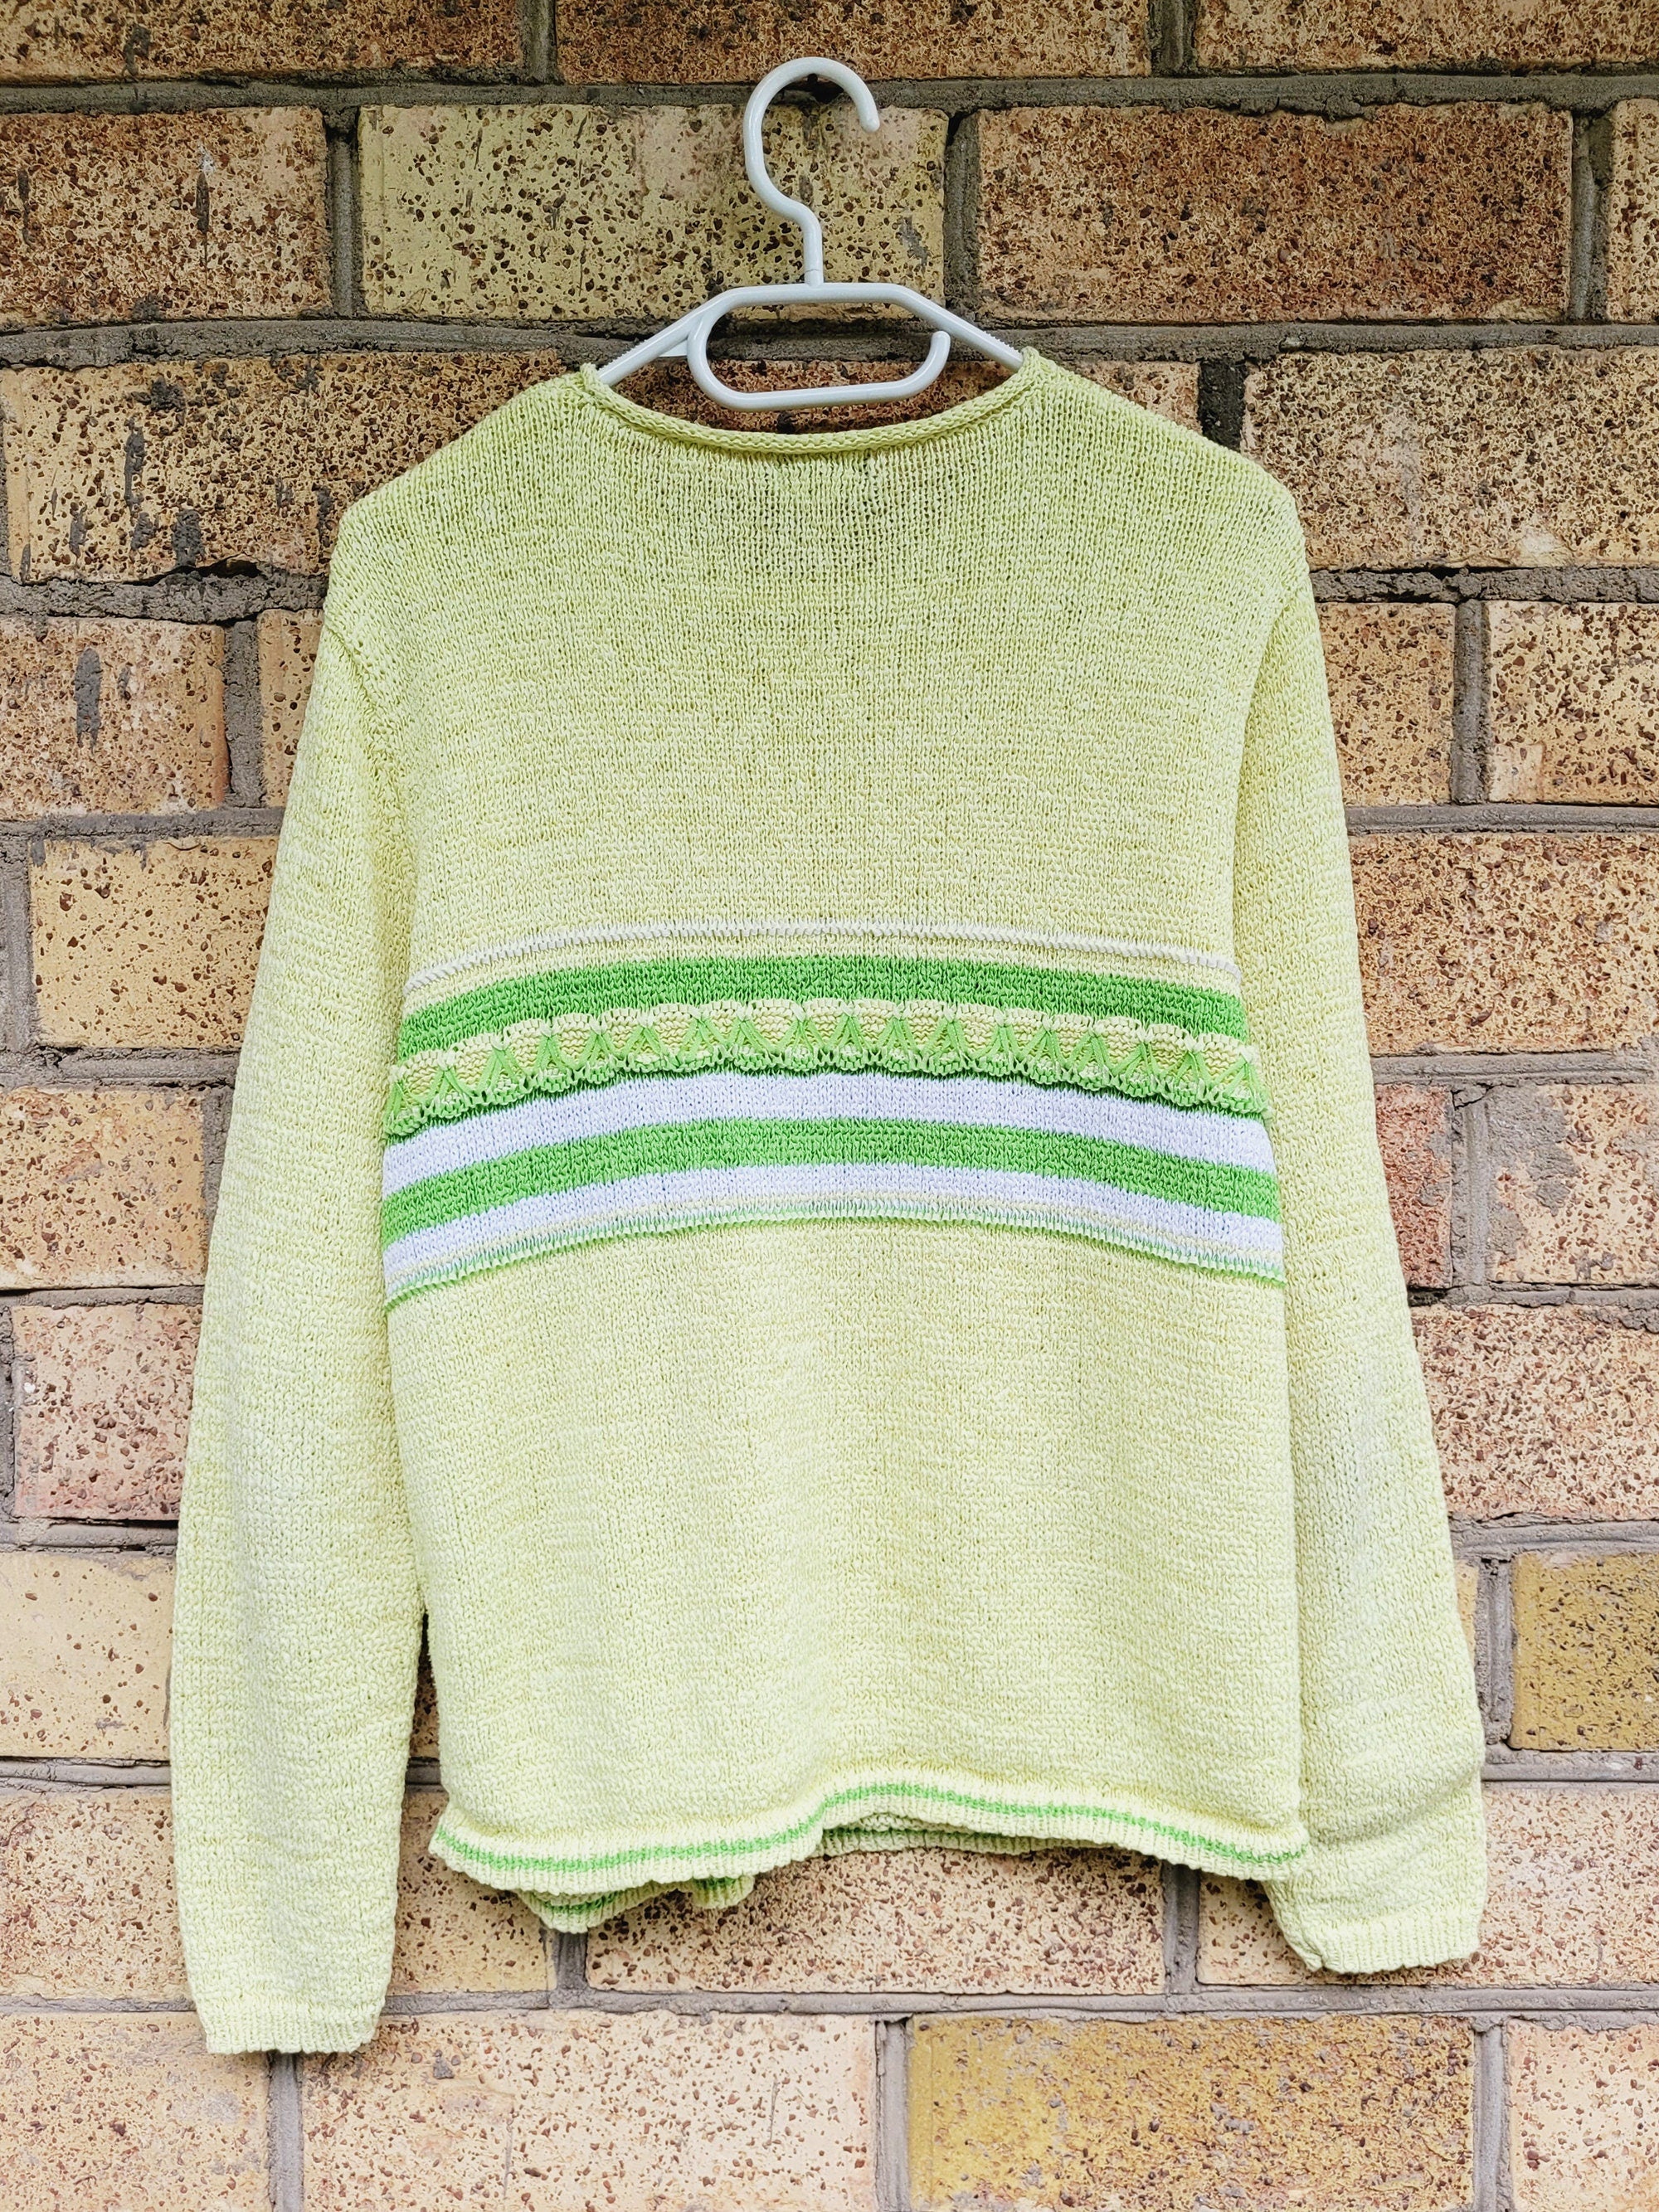 90s green striped knit preppy minimalist jumper top